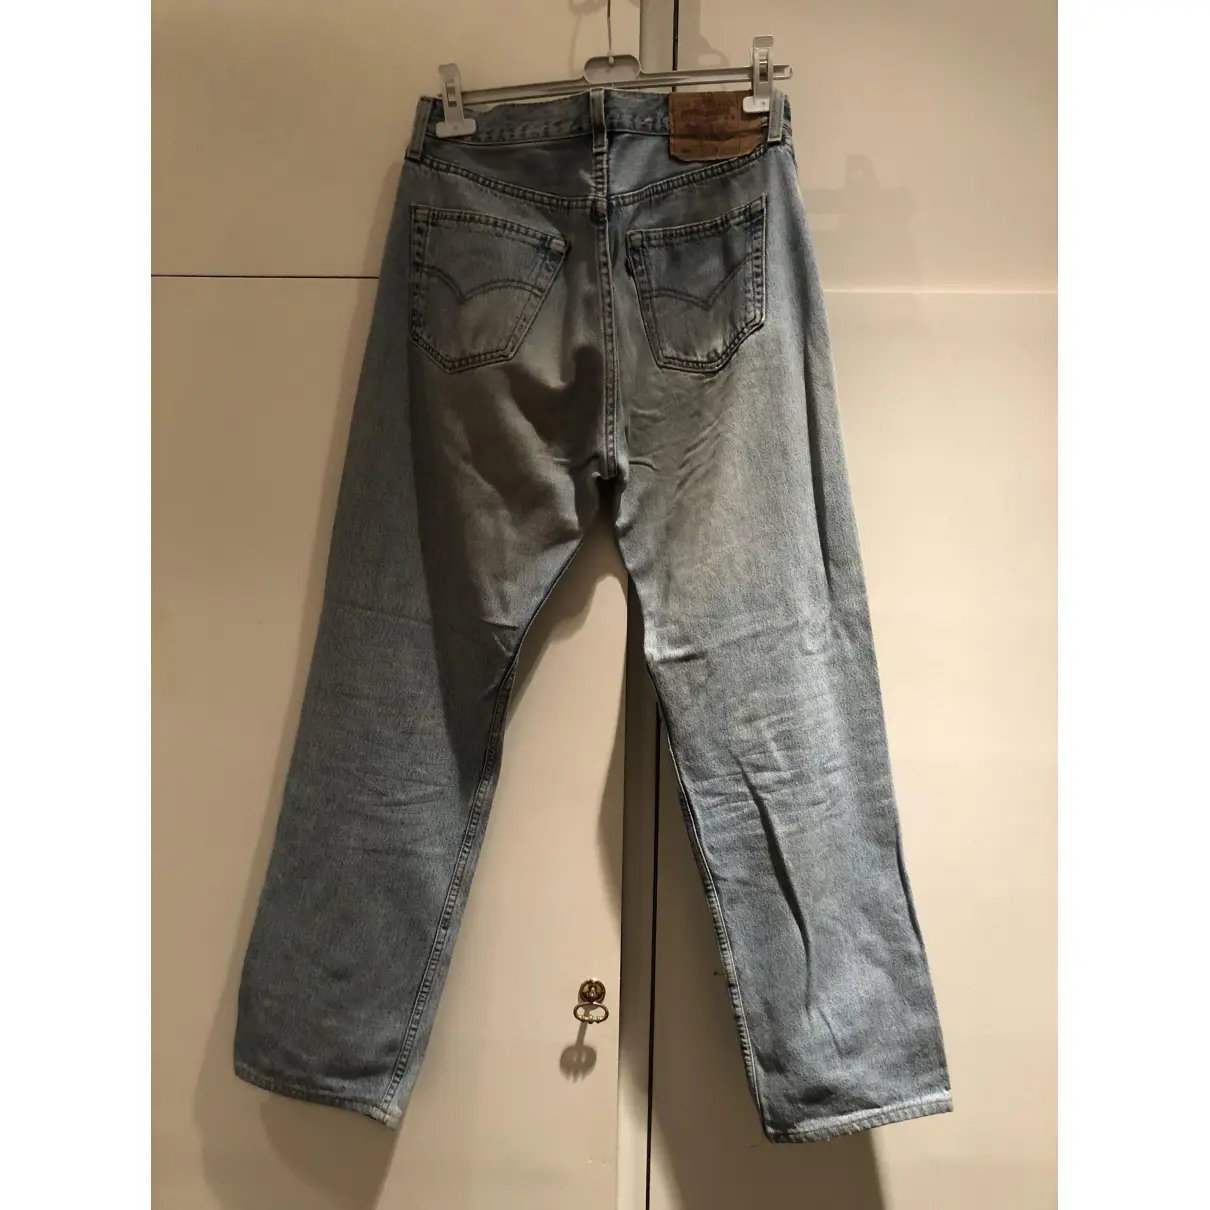 Buy Levi's 501 jeans online